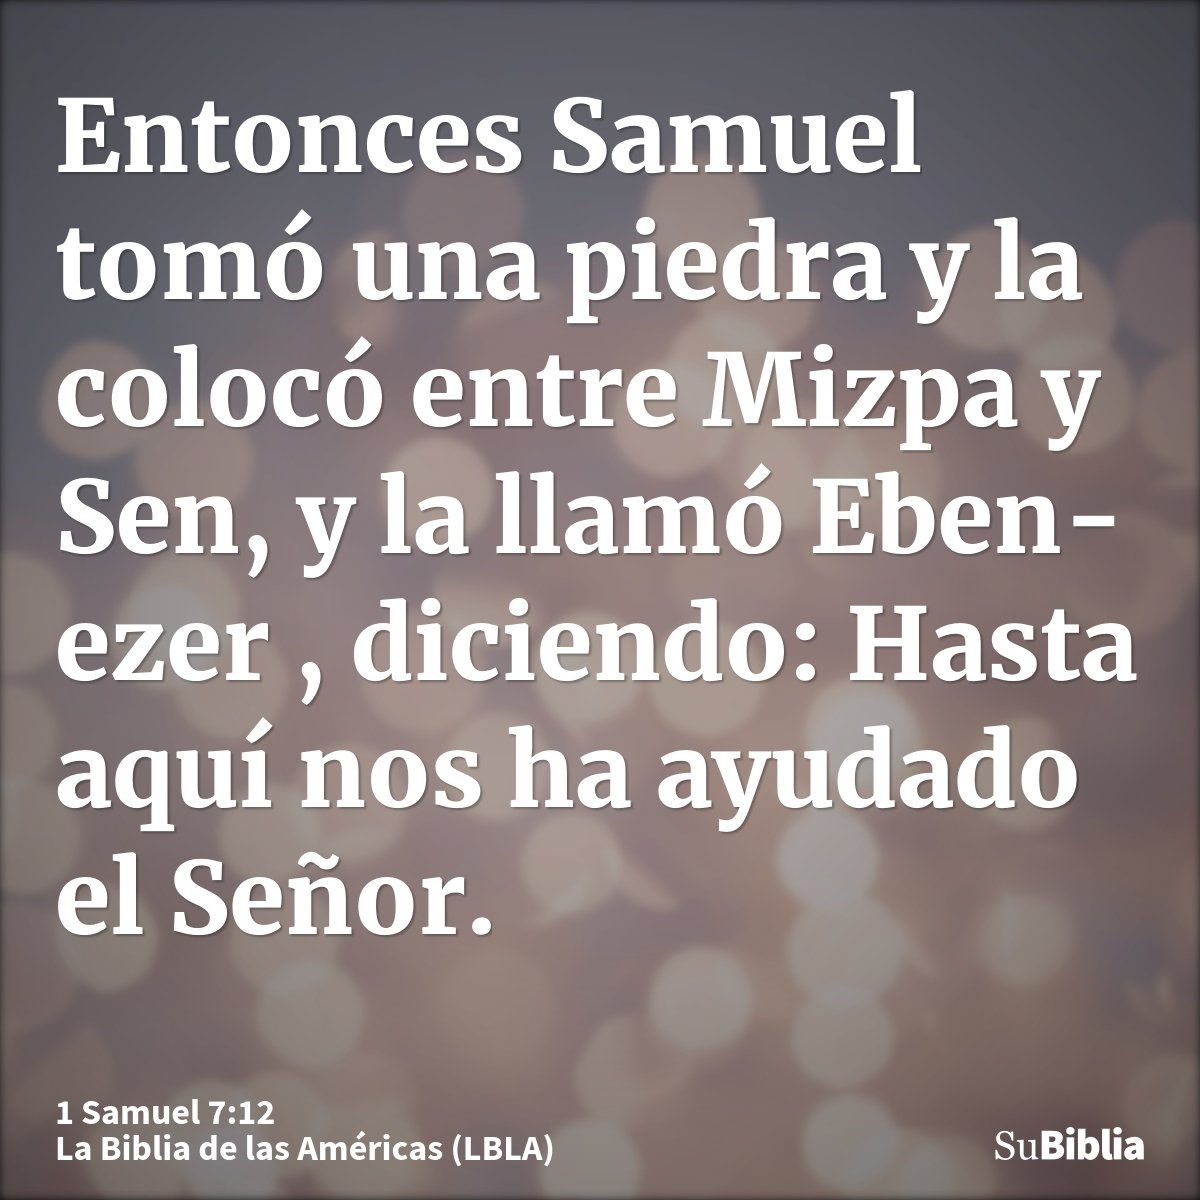 Entonces Samuel tomó una piedra y la colocó entre Mizpa y Sen, y la llamó Eben-ezer , diciendo: Hasta aquí nos ha ayudado el Señor.